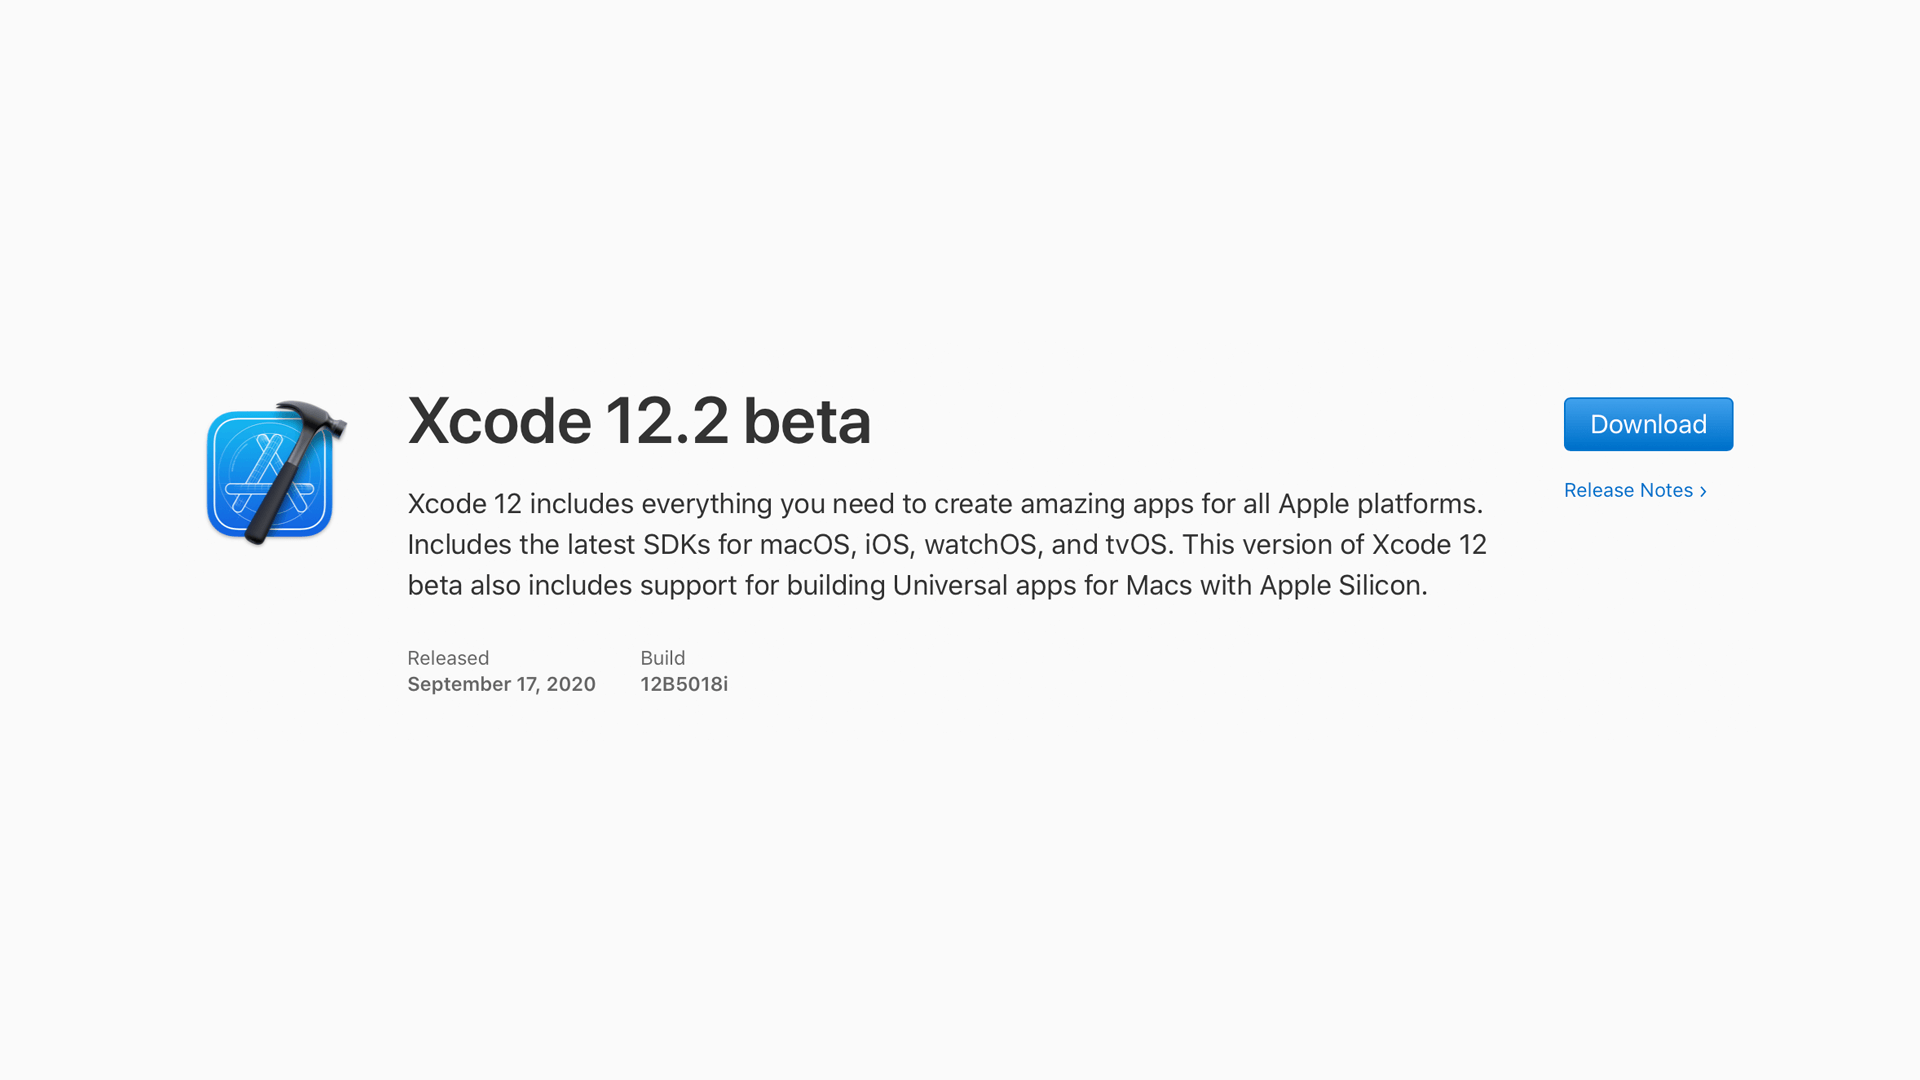 Бета-версия Xcode 12.2 теперь доступна разработчикам, iOS 14.2 упоминается в примечаниях к выпуску